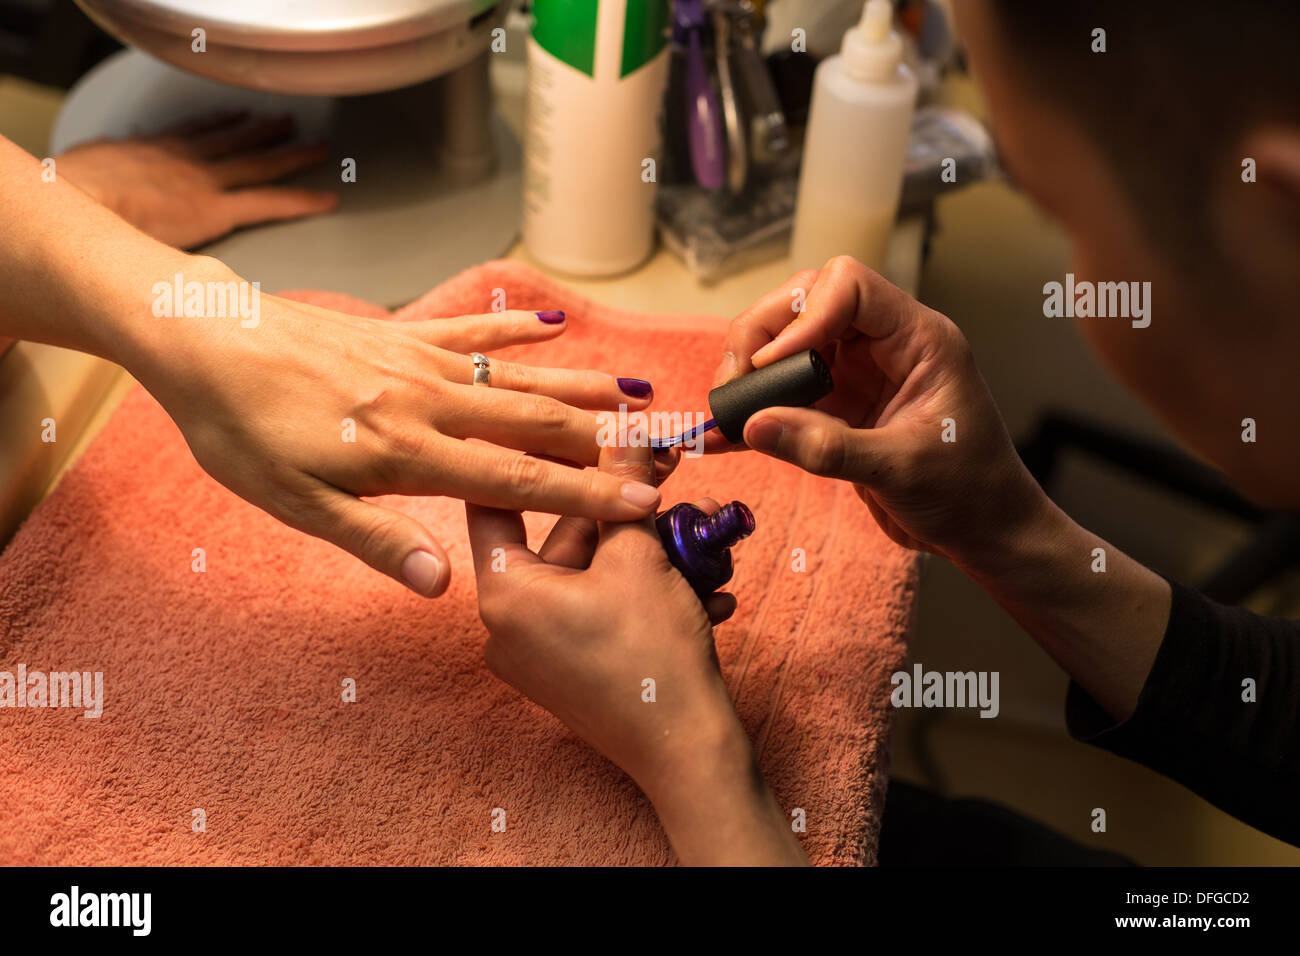 Manicure at a Nail Bar Stock Photo